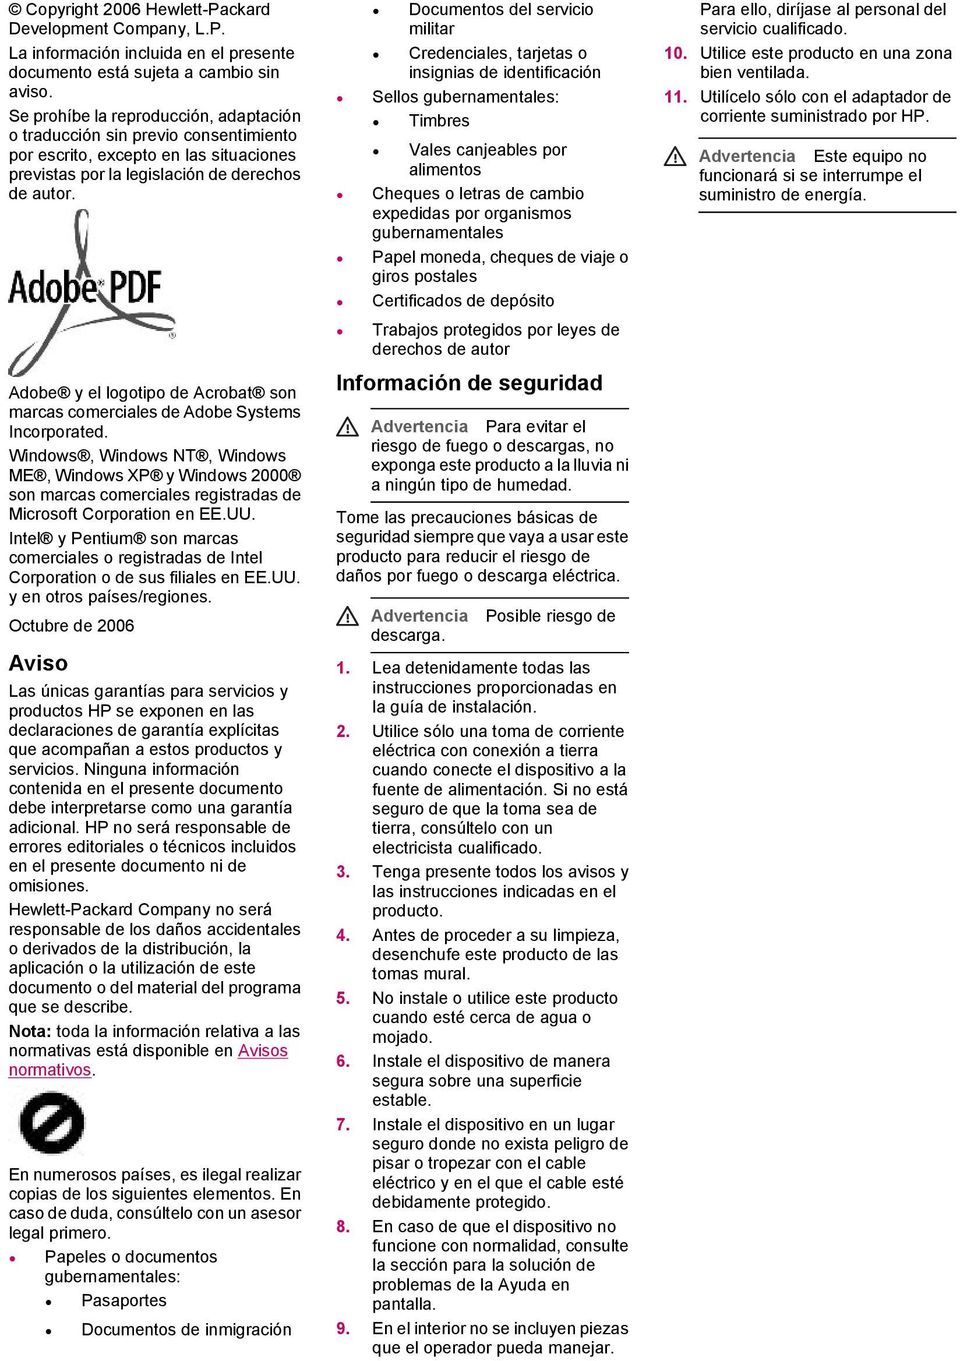 Adobe y el logotipo de Acrobat son marcas comerciales de Adobe Systems Incorporated.